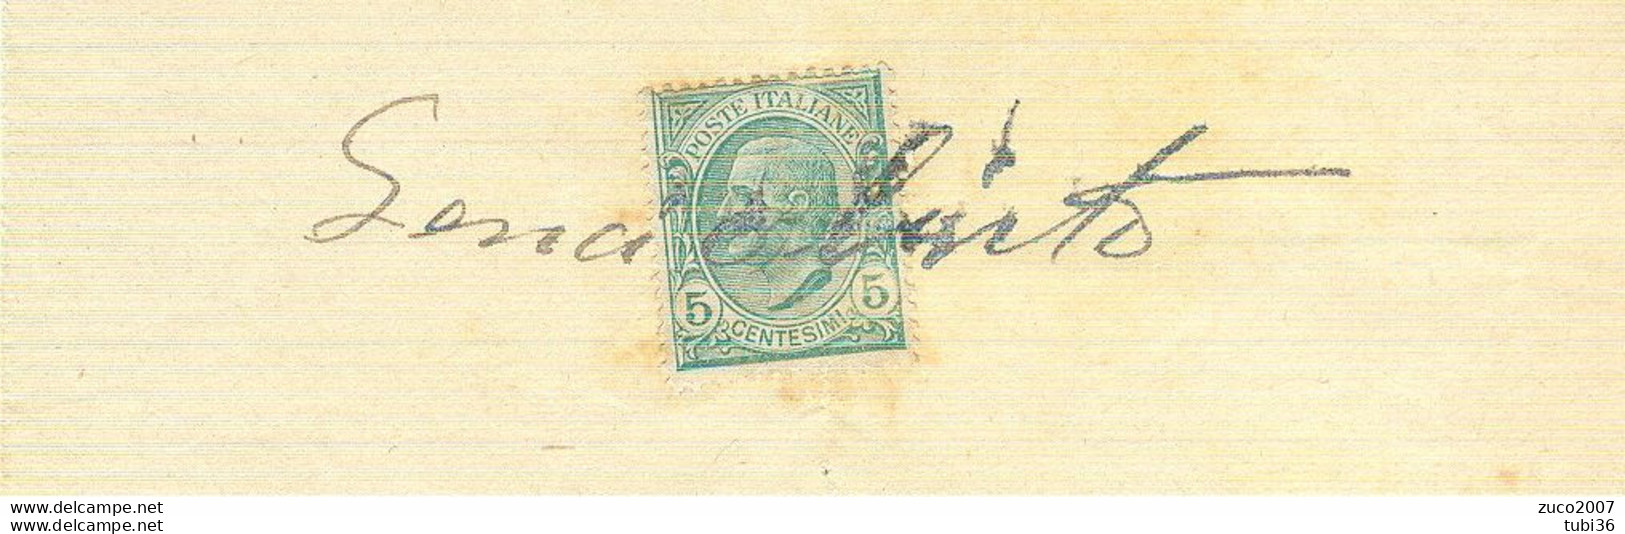 VITTORIO EMANUELE III Cent.5 (s81),SU RICEVUTA PRIVATA,anno 1914,USO MARCA DA BOLLO, - Steuermarken